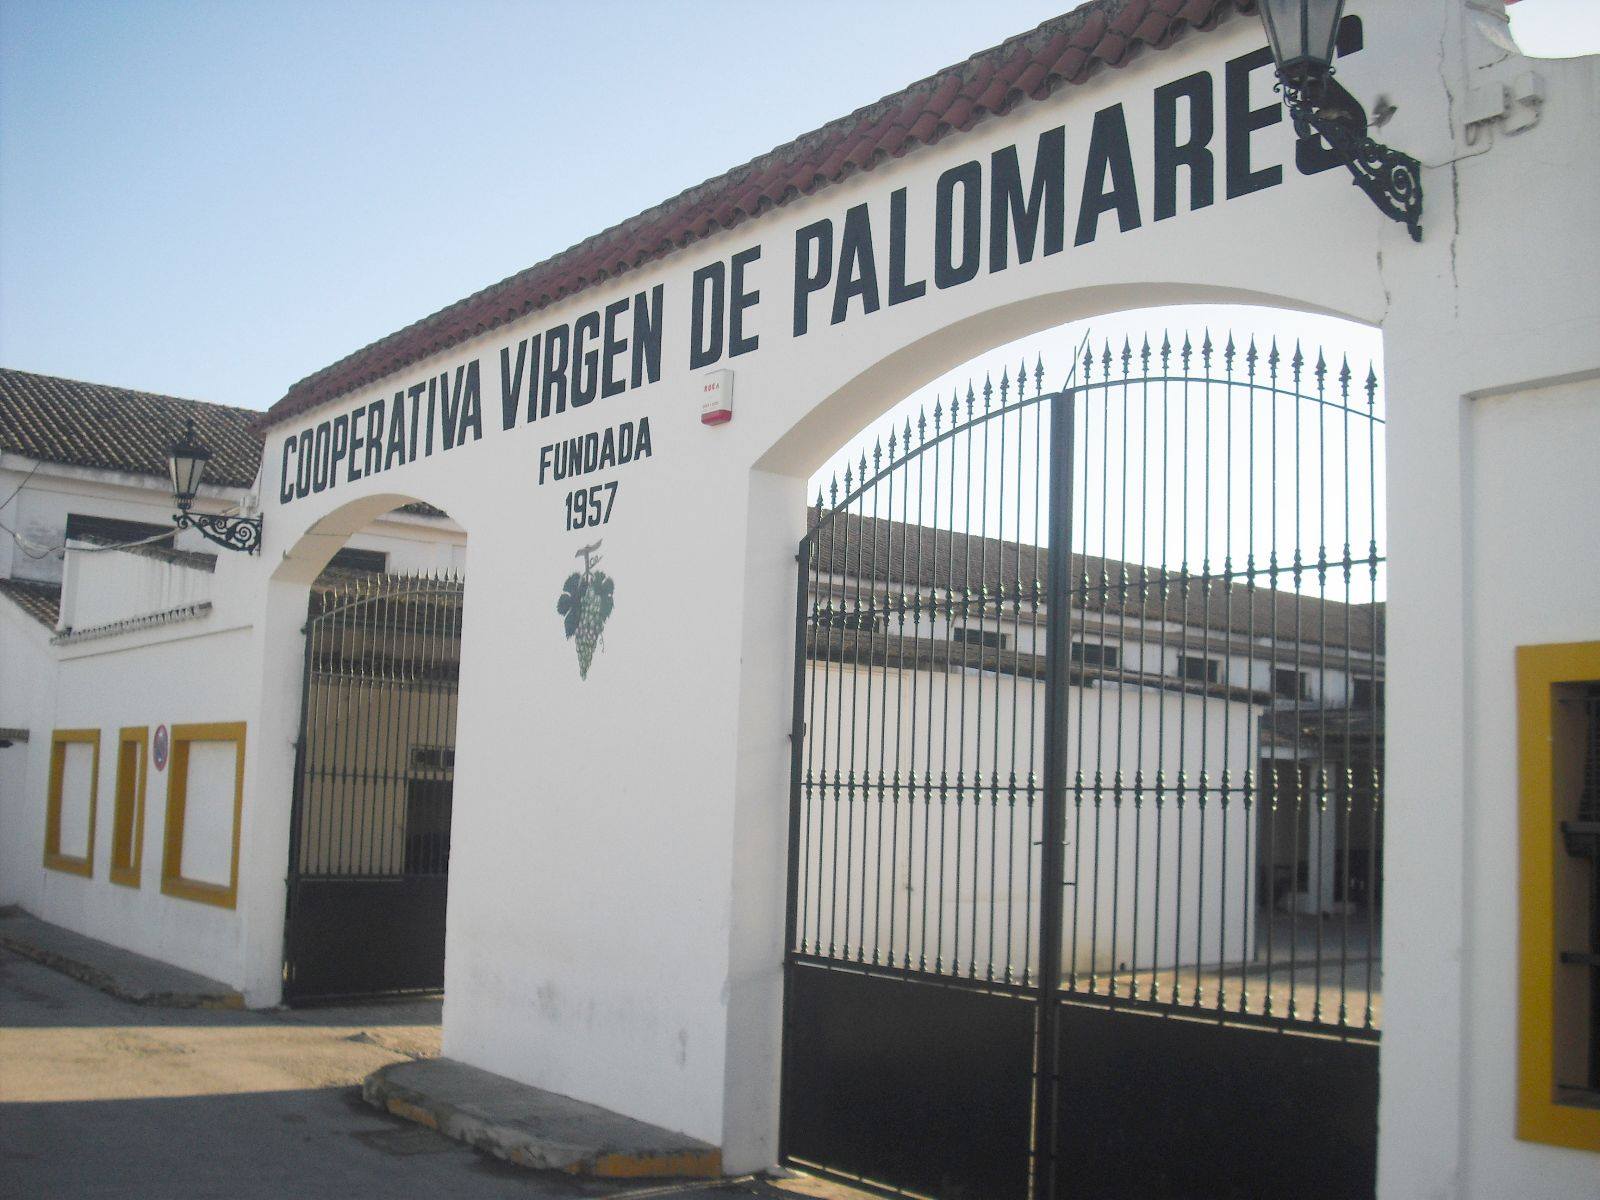 COOPERATIVA AGRÍCOLA VIRGEN DE PALOMARES